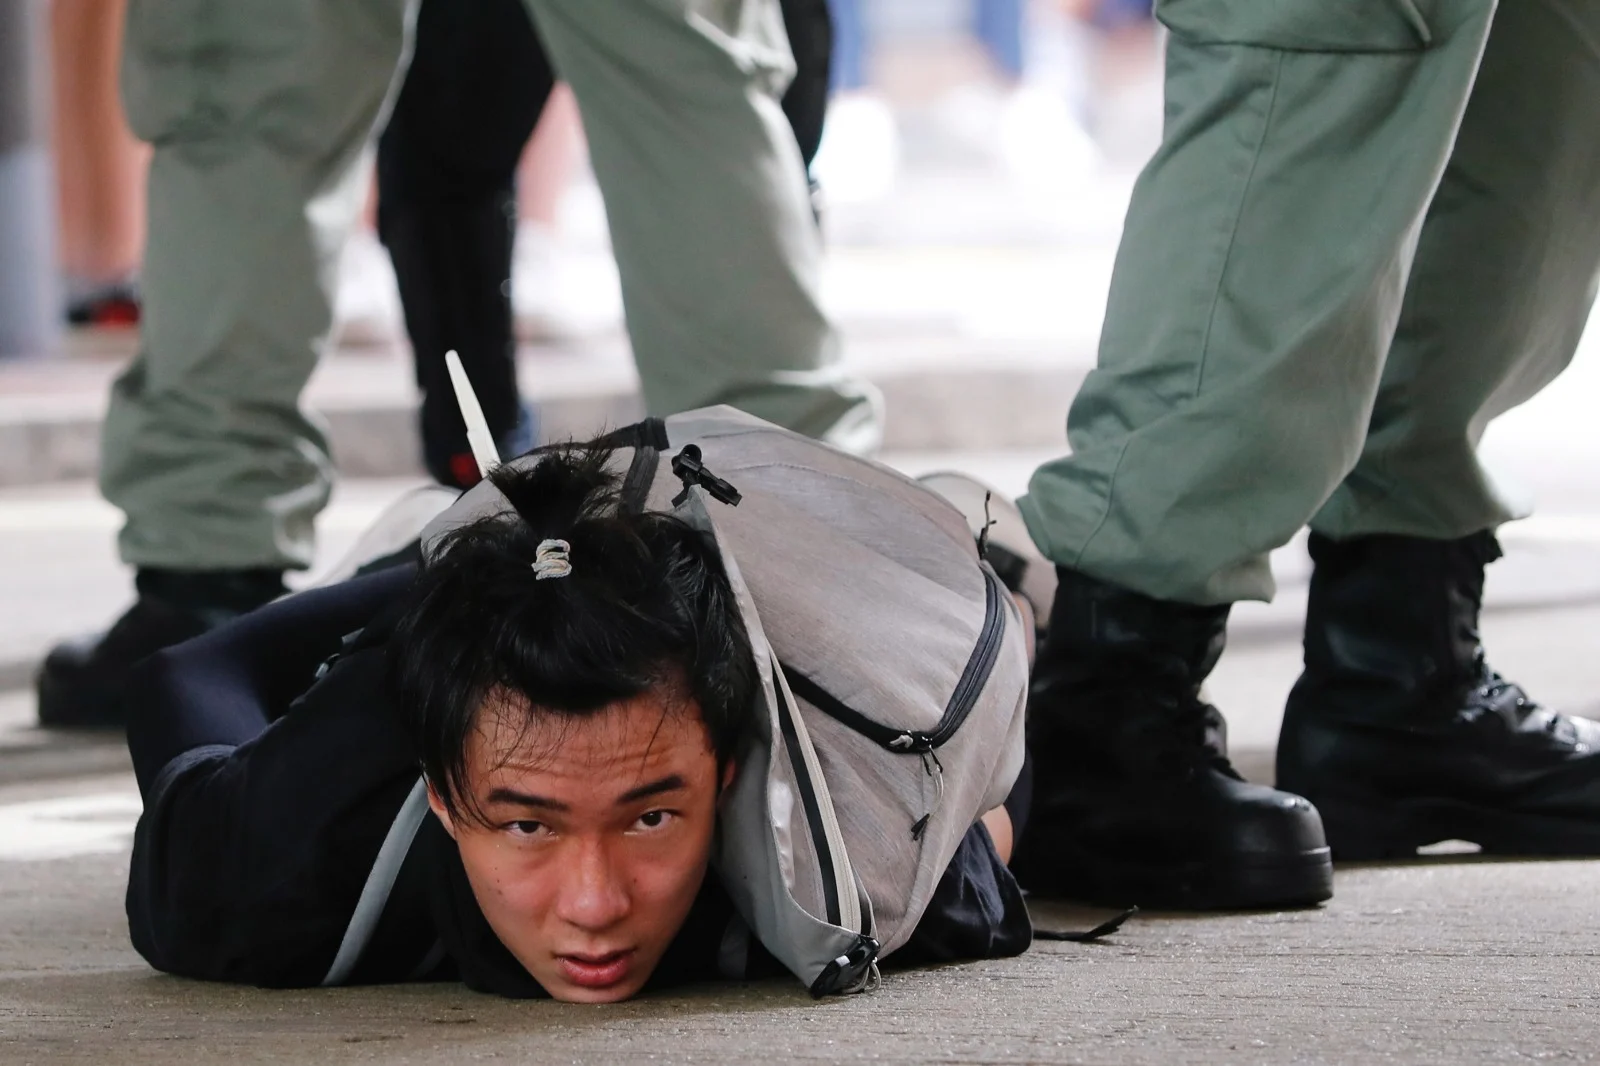 עימות בין המשטרה למפגין בהונג קונג